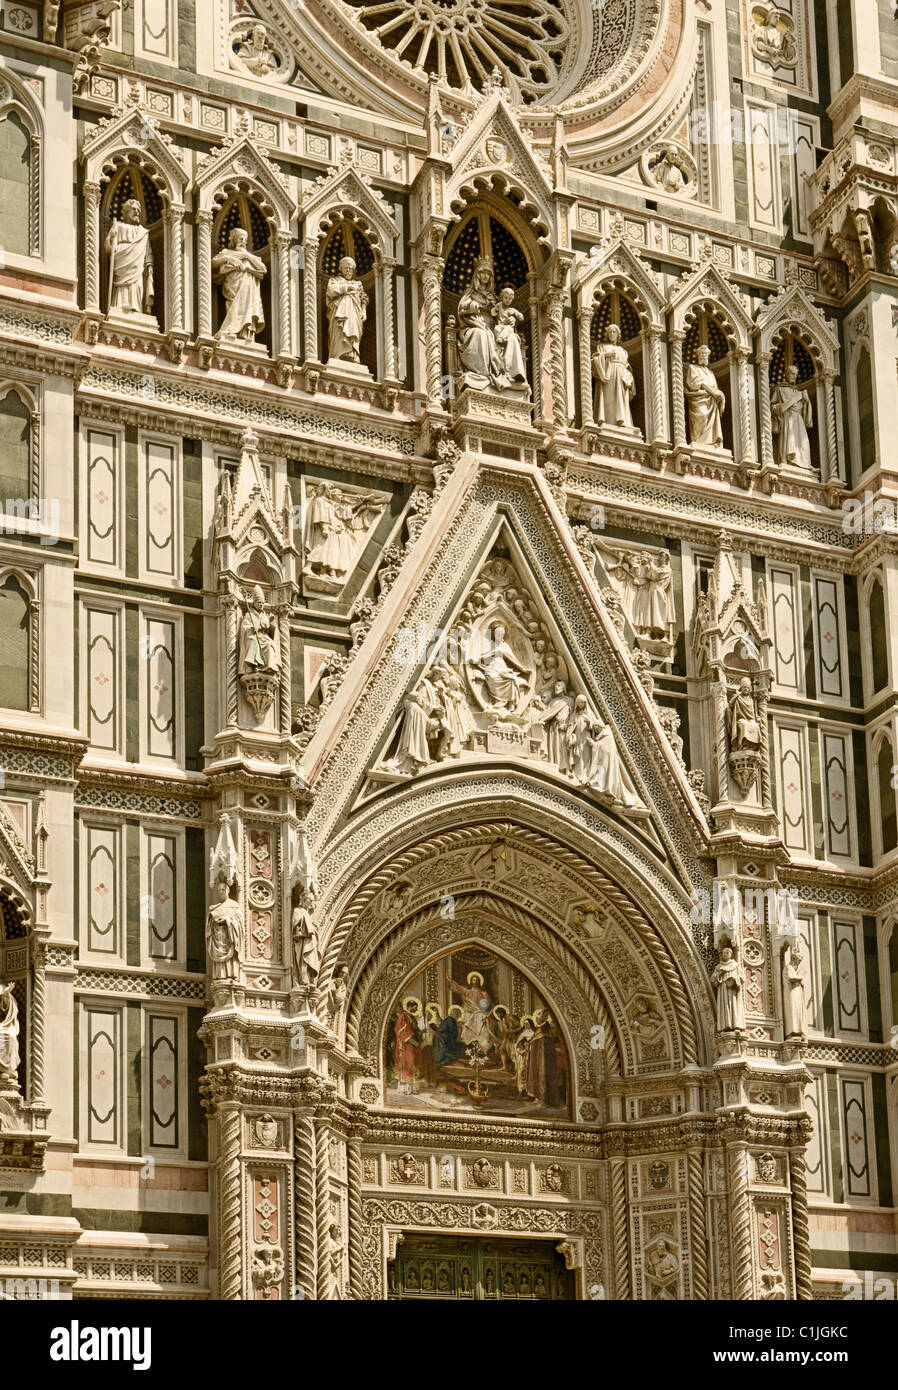 Firenze, Italia. Cattedrale di Santa Maria del Fiore o il Duomo, visto dalla Piazza San Giovanni. Aggiunta di facciata nel 1887. Foto Stock